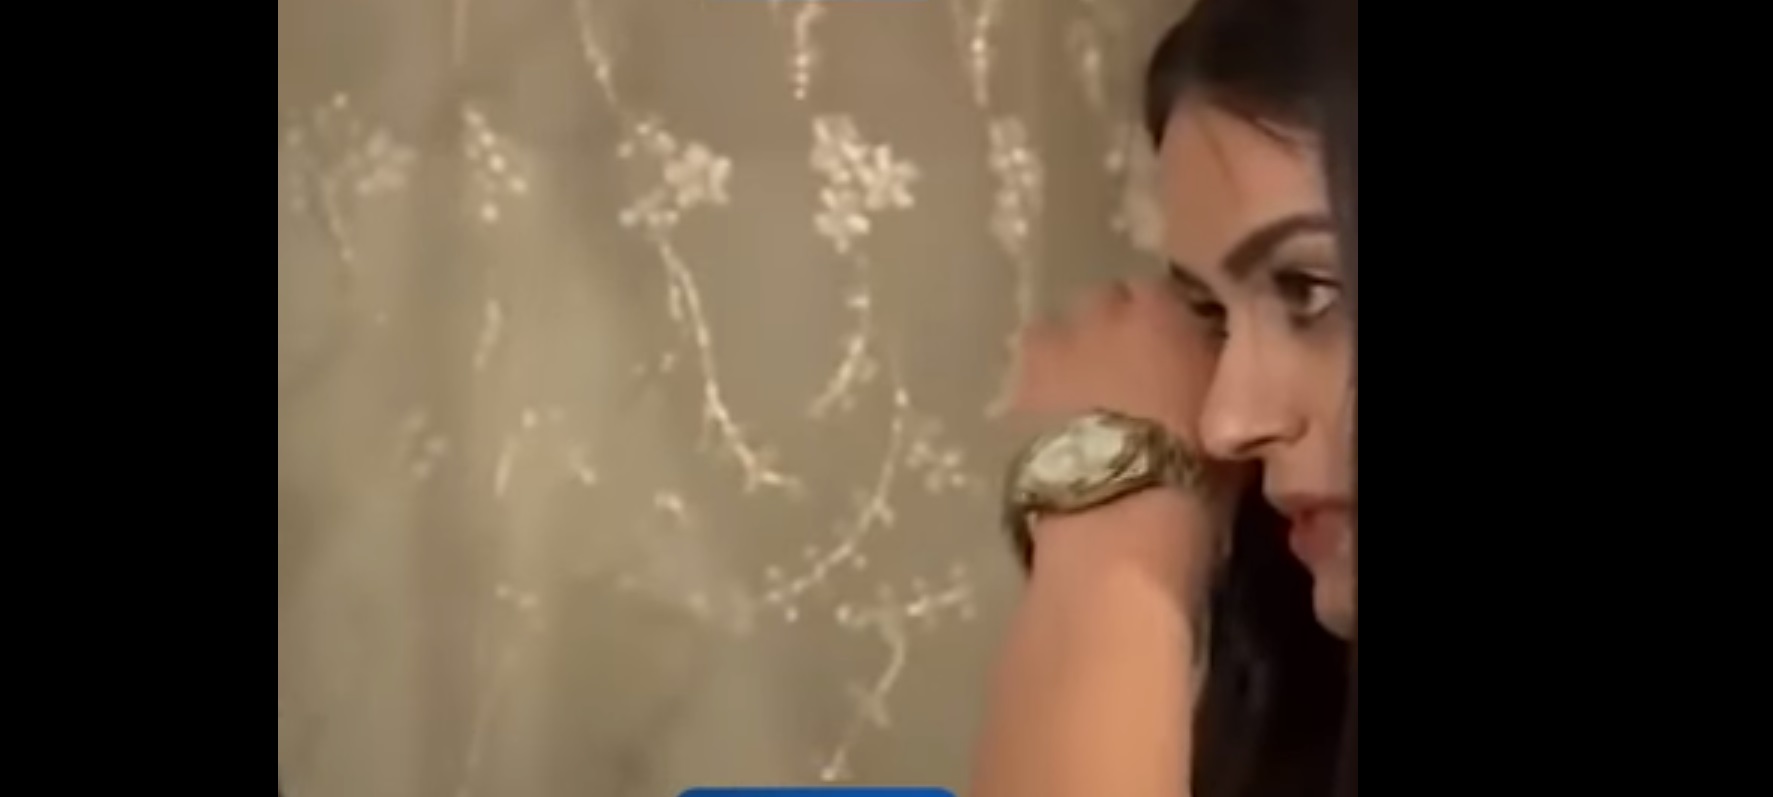 فيديو.. لحظة مواجهة فتاة إيزيدية لمغتصبها: دمرت حياتي